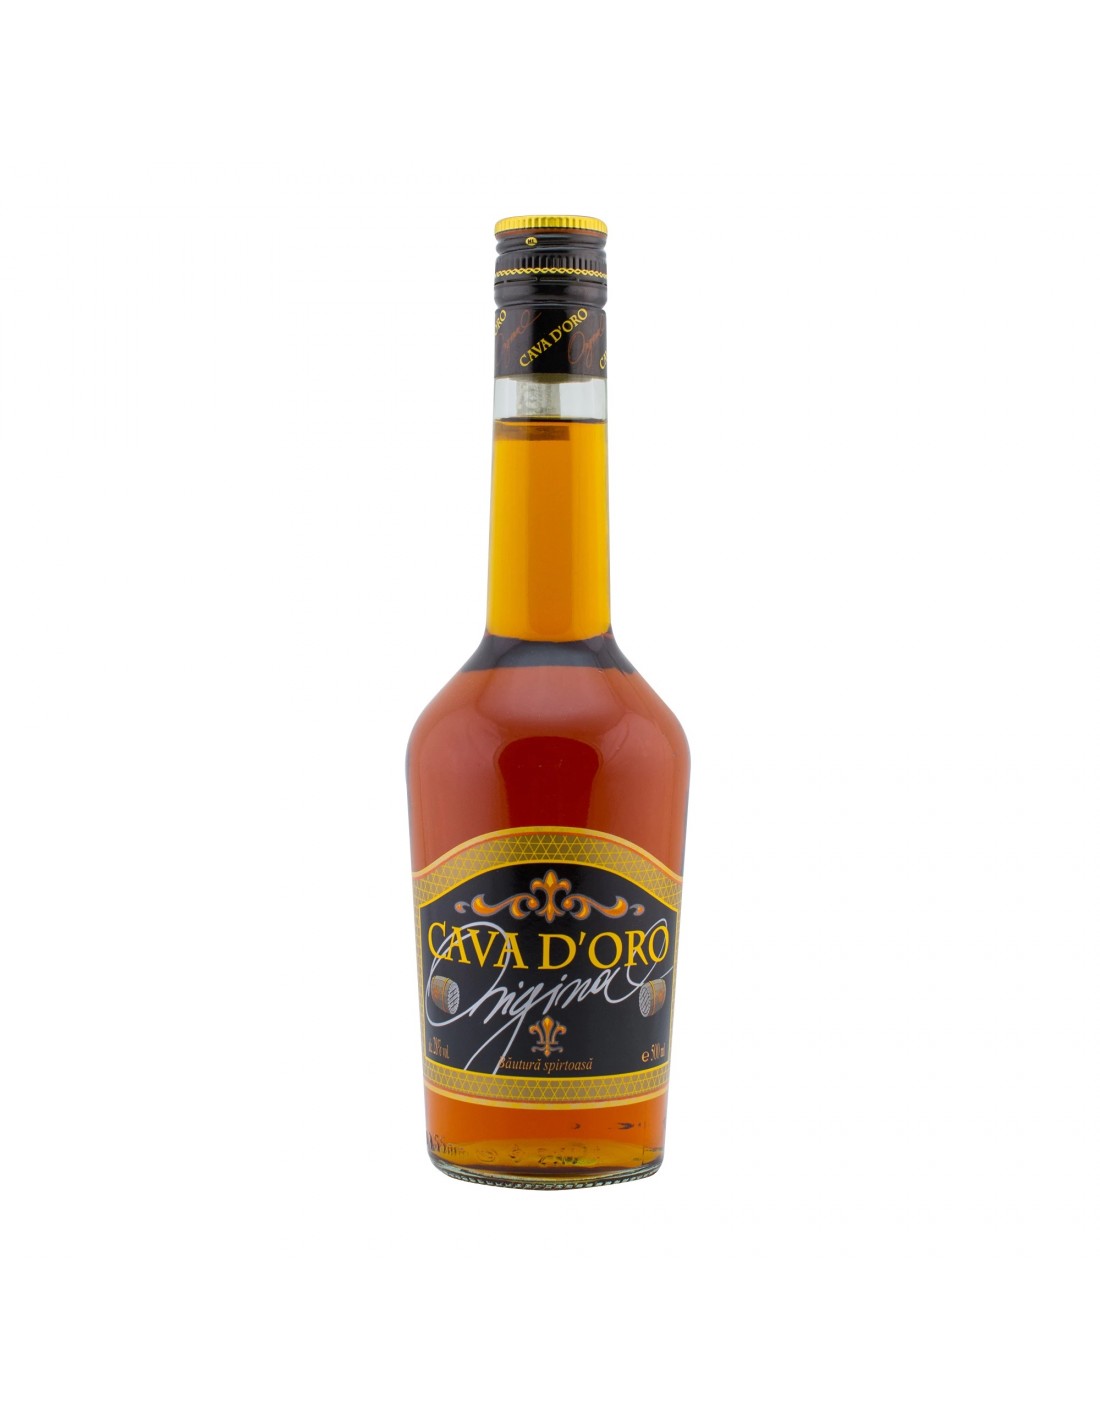 Brandy Cava Doro, 28% alc., 0.5L alcooldiscount.ro